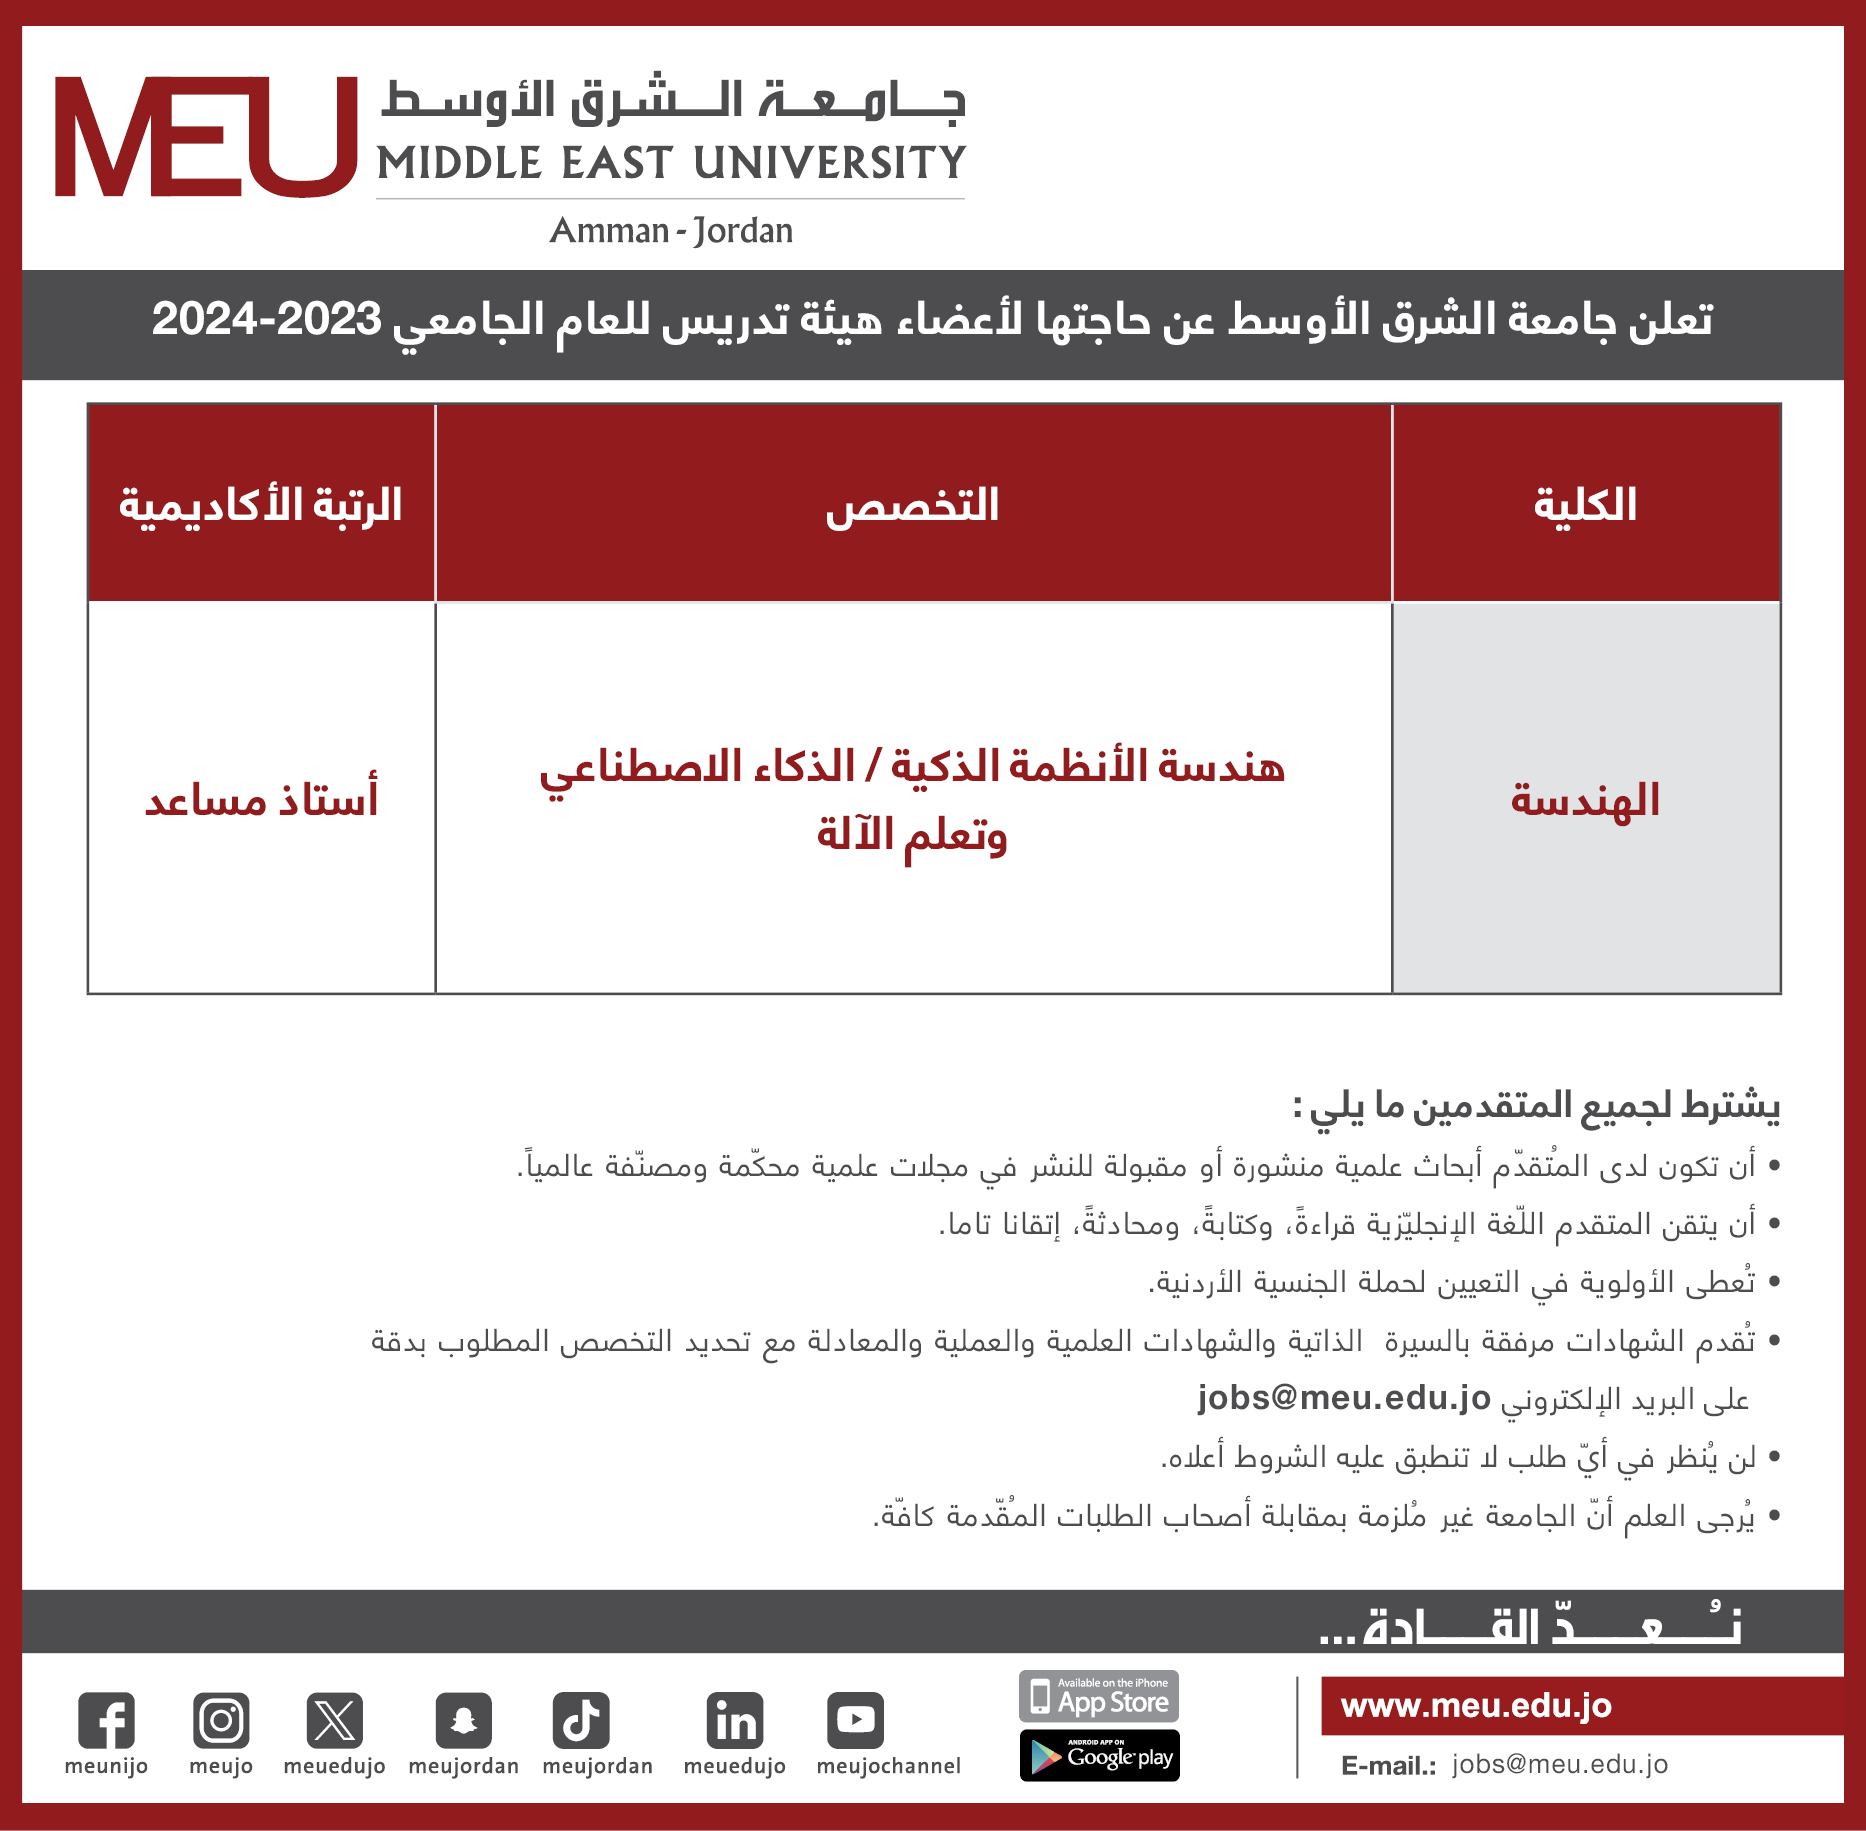 جامعة الشرق الأوسط تعلن عن حاجتها لأعضاء هيئة تدريسية